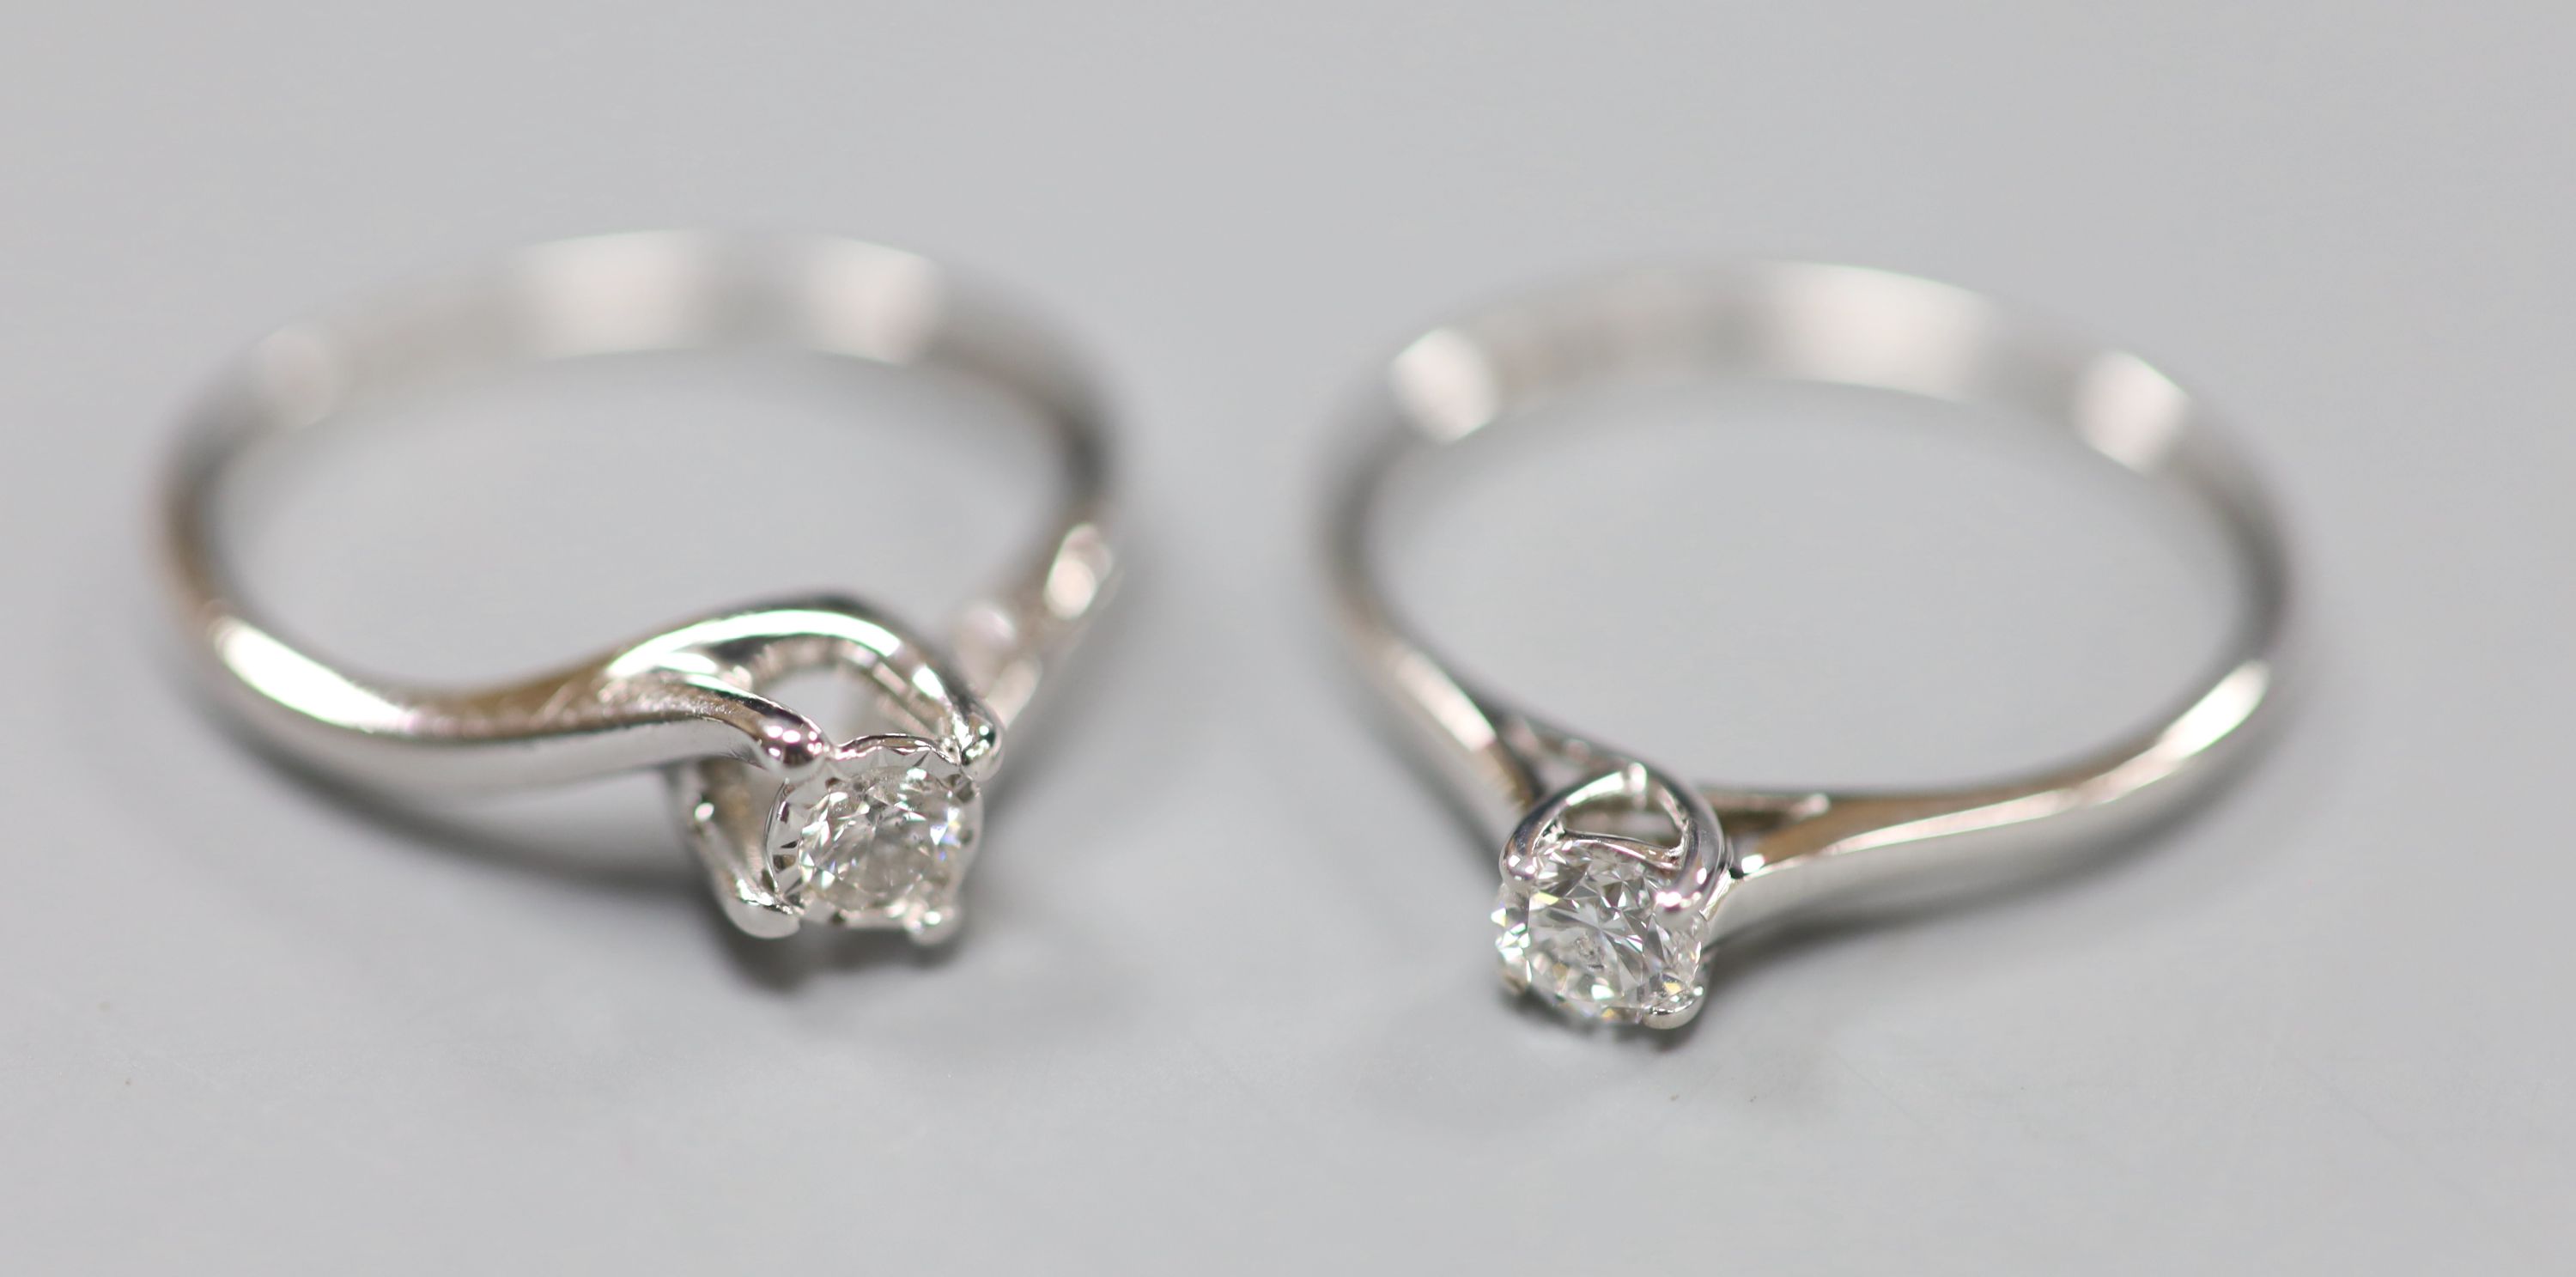 2 x 9k and diamond rings.